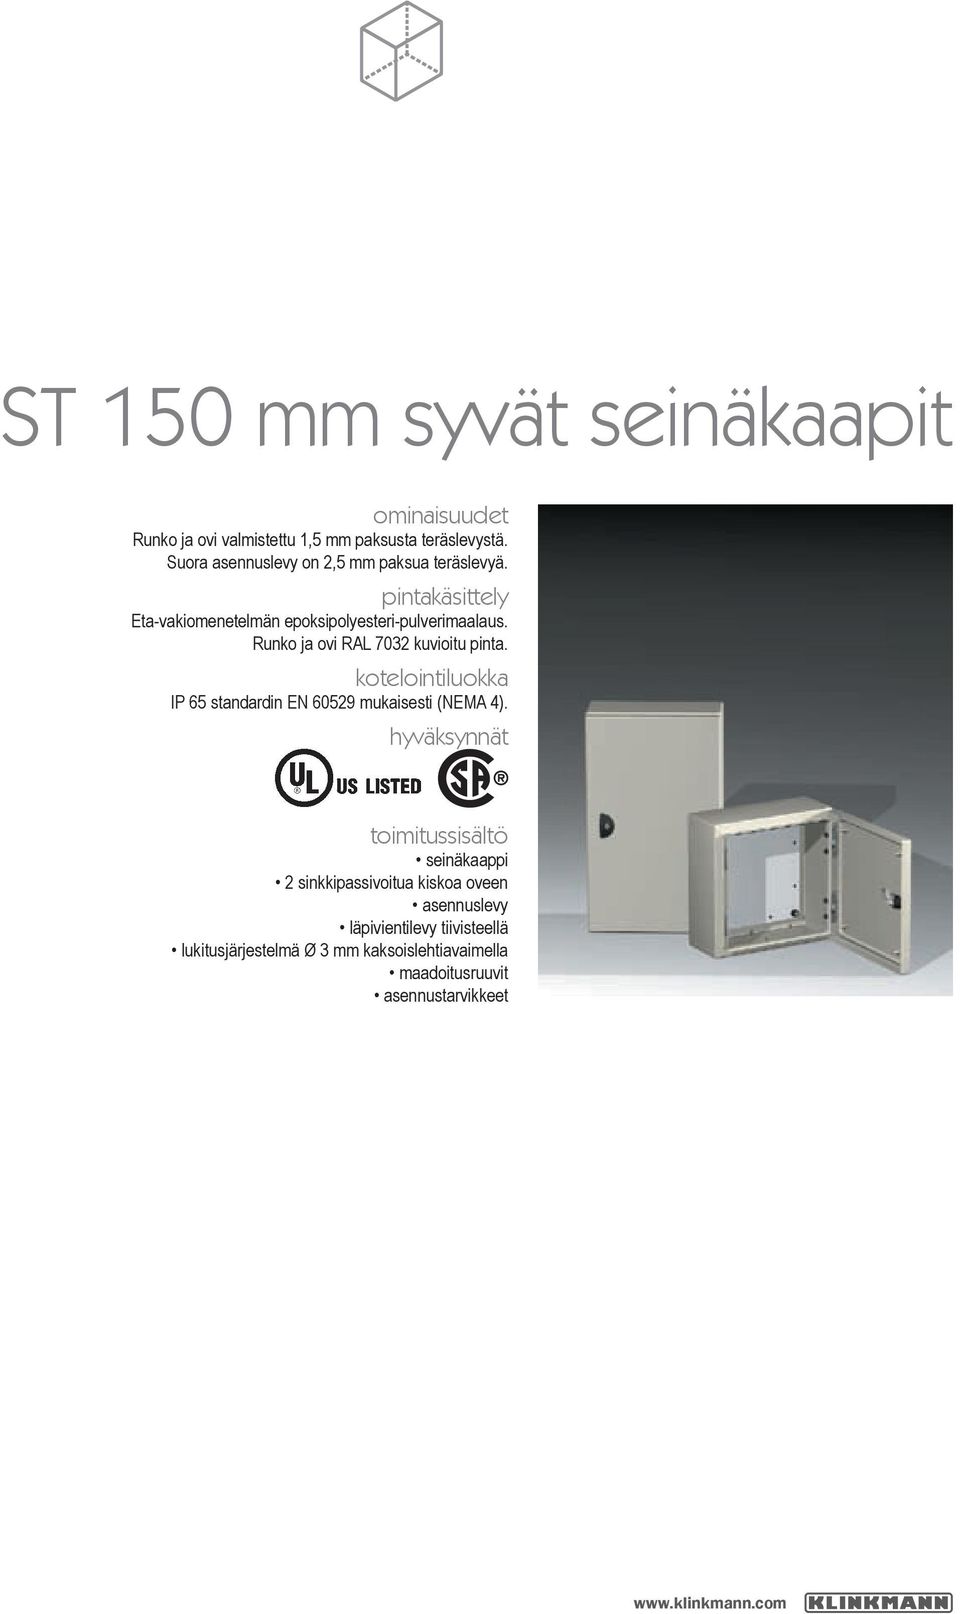 Runko ja ovi RAL 7032 kuvioitu pinta. kotelointiluokka IP 65 standardin EN 60529 mukaisesti (NEMA 4).